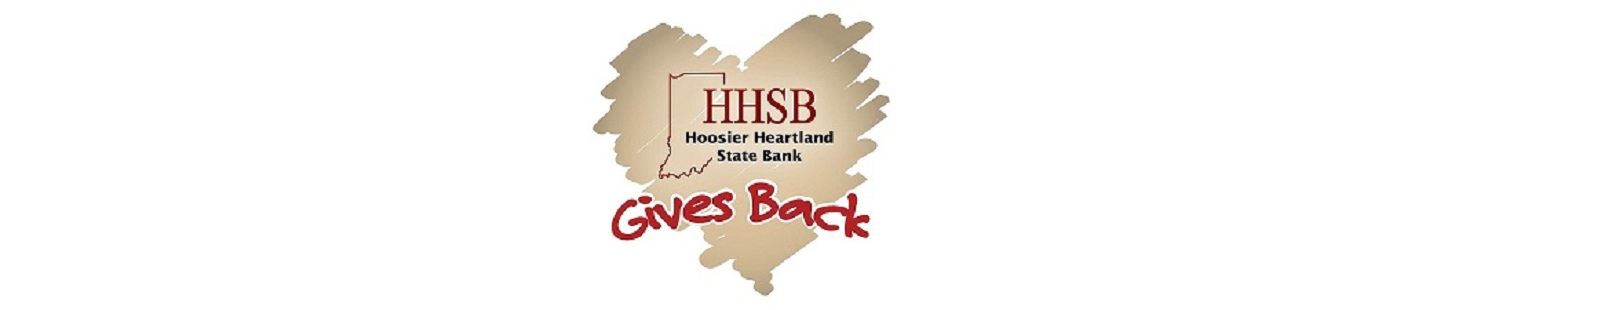 HHSB gives back logo